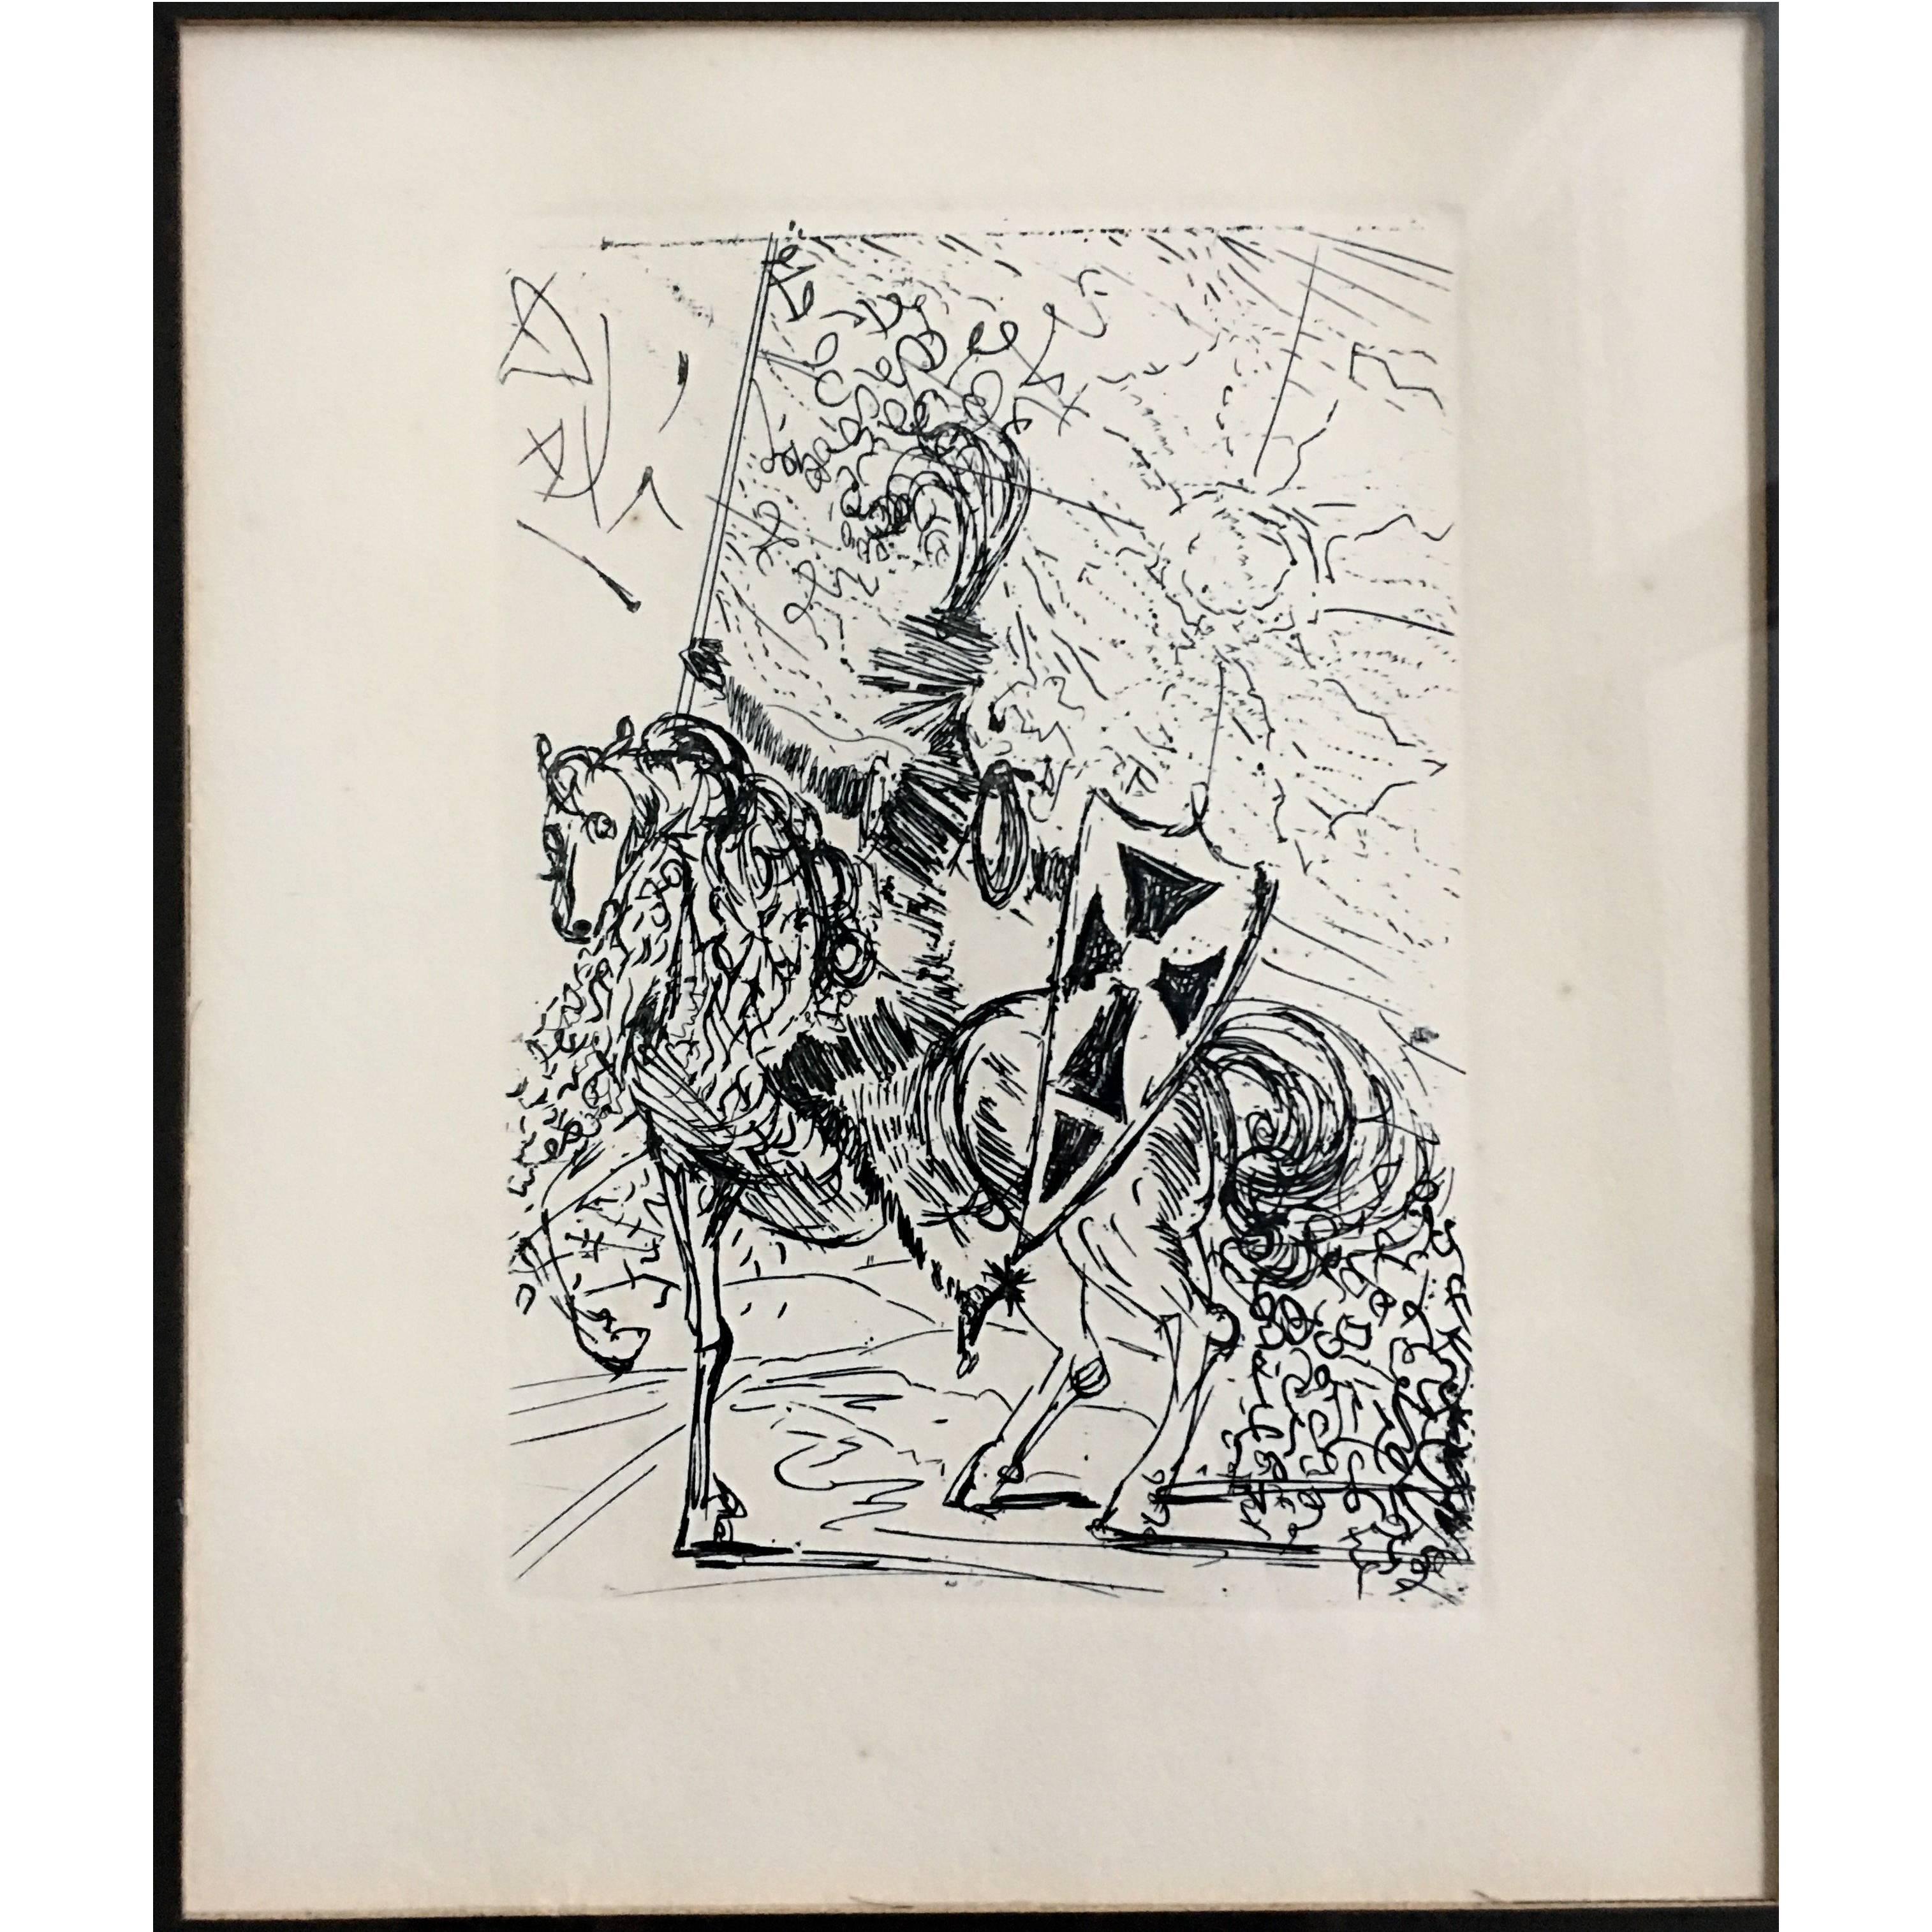 Salvador Dali Original Lithograph, "El Cid" Framed, 1965